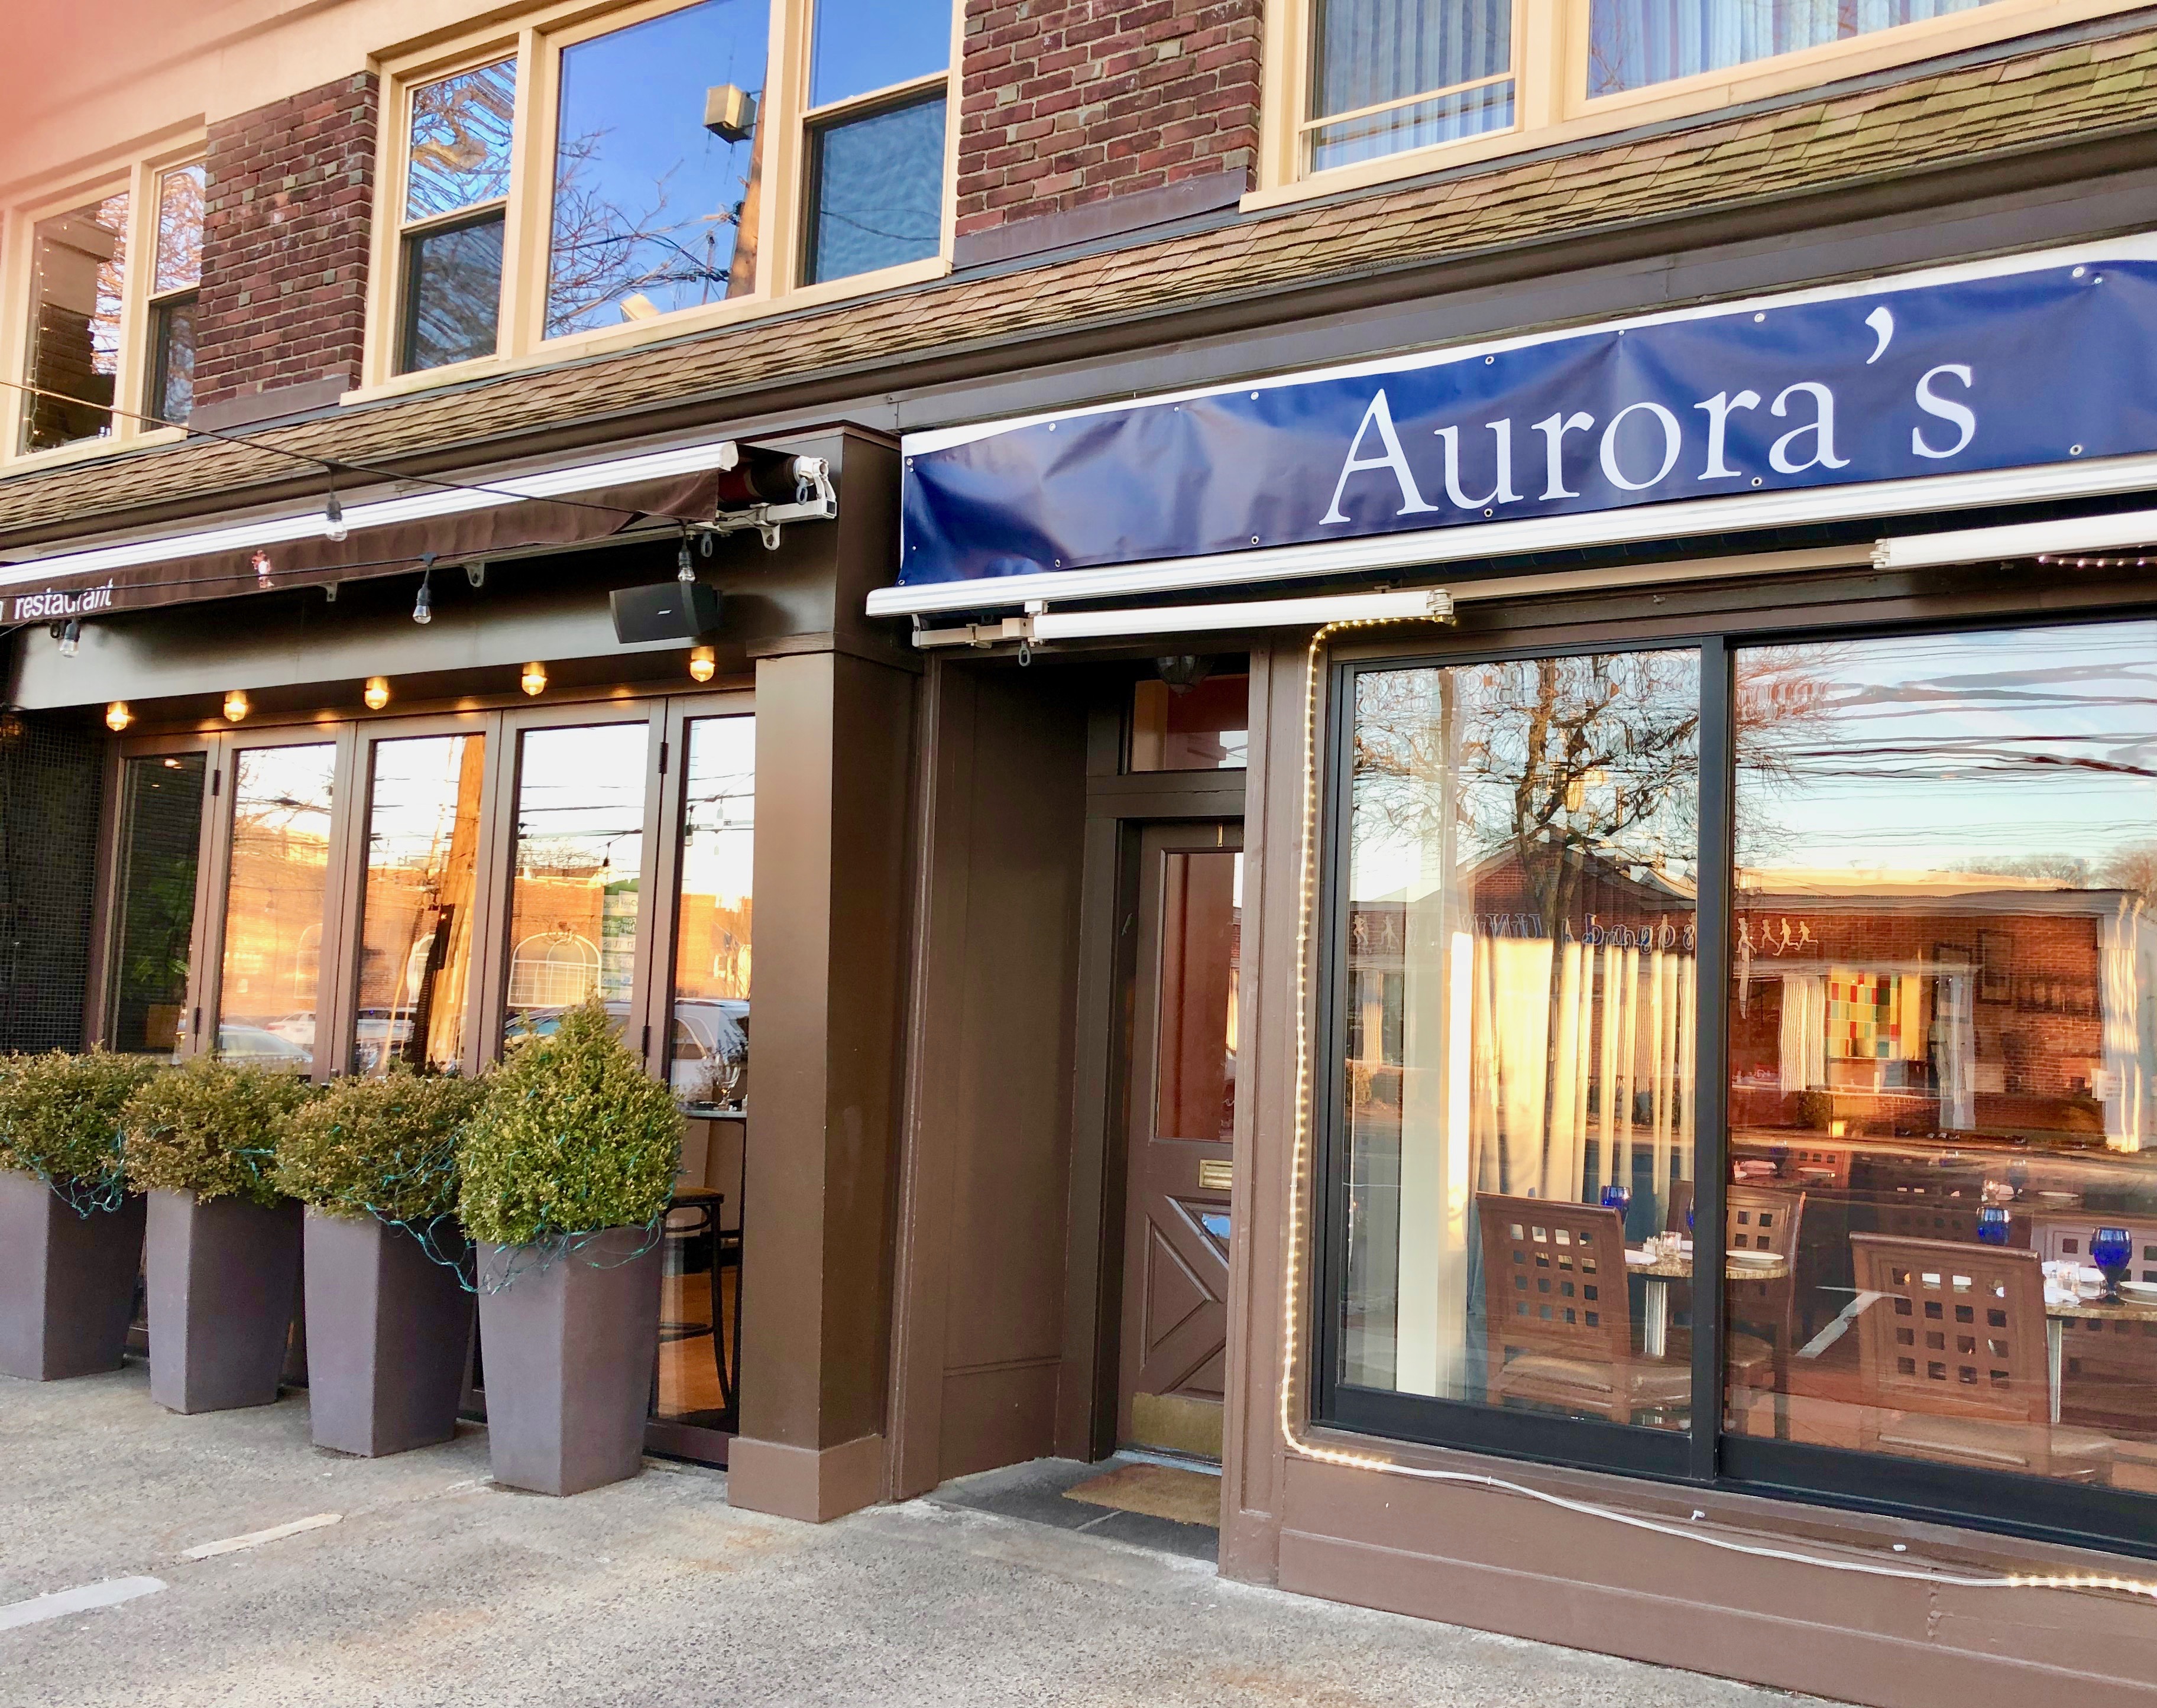 Aurora's